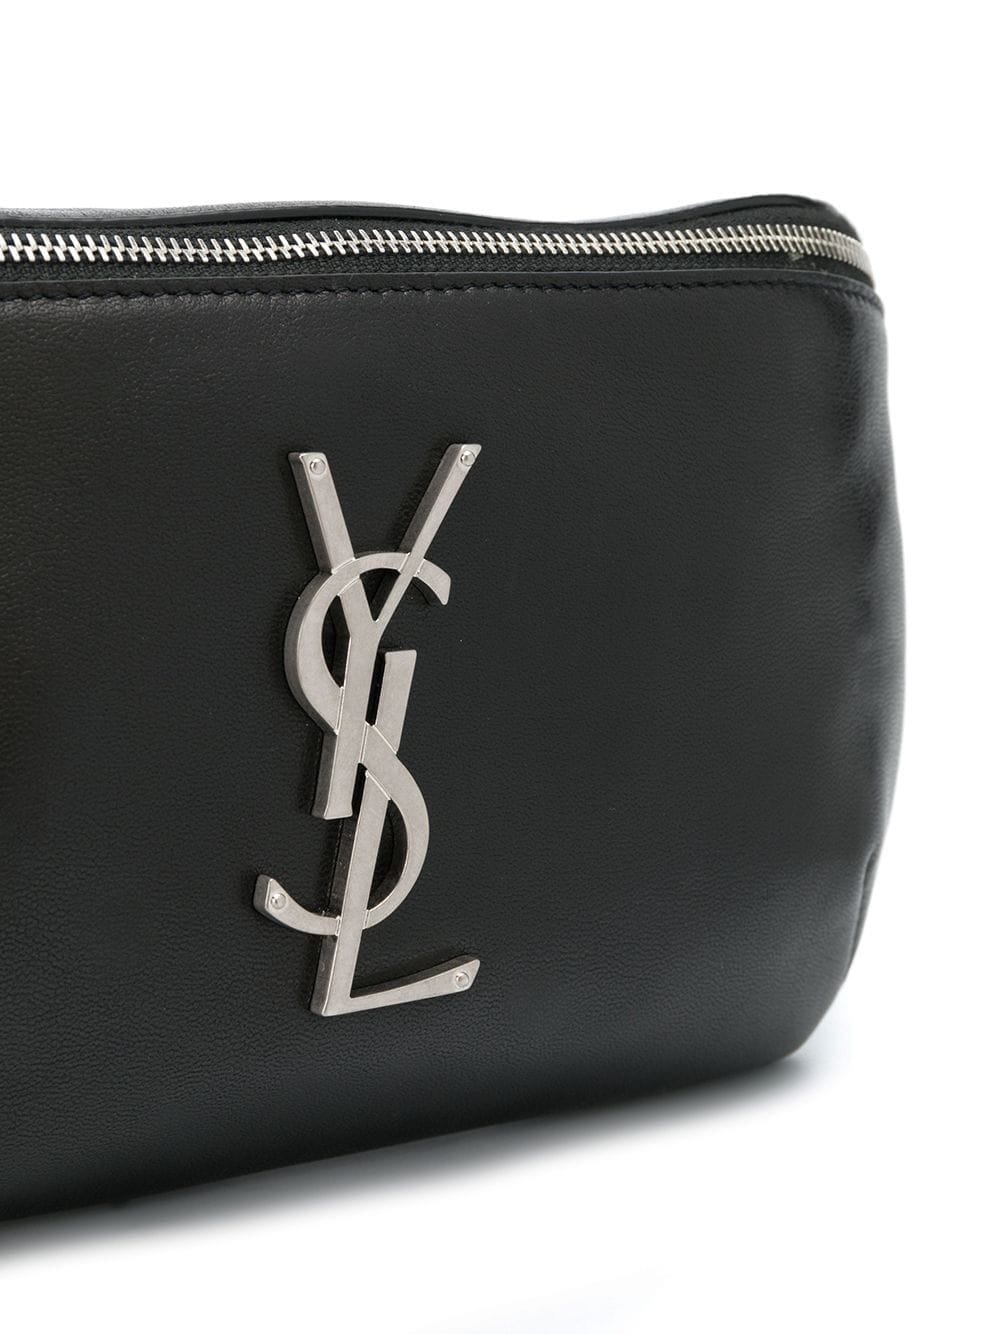 Saint Laurent Ysl Leather Belt Bag in Black for Men